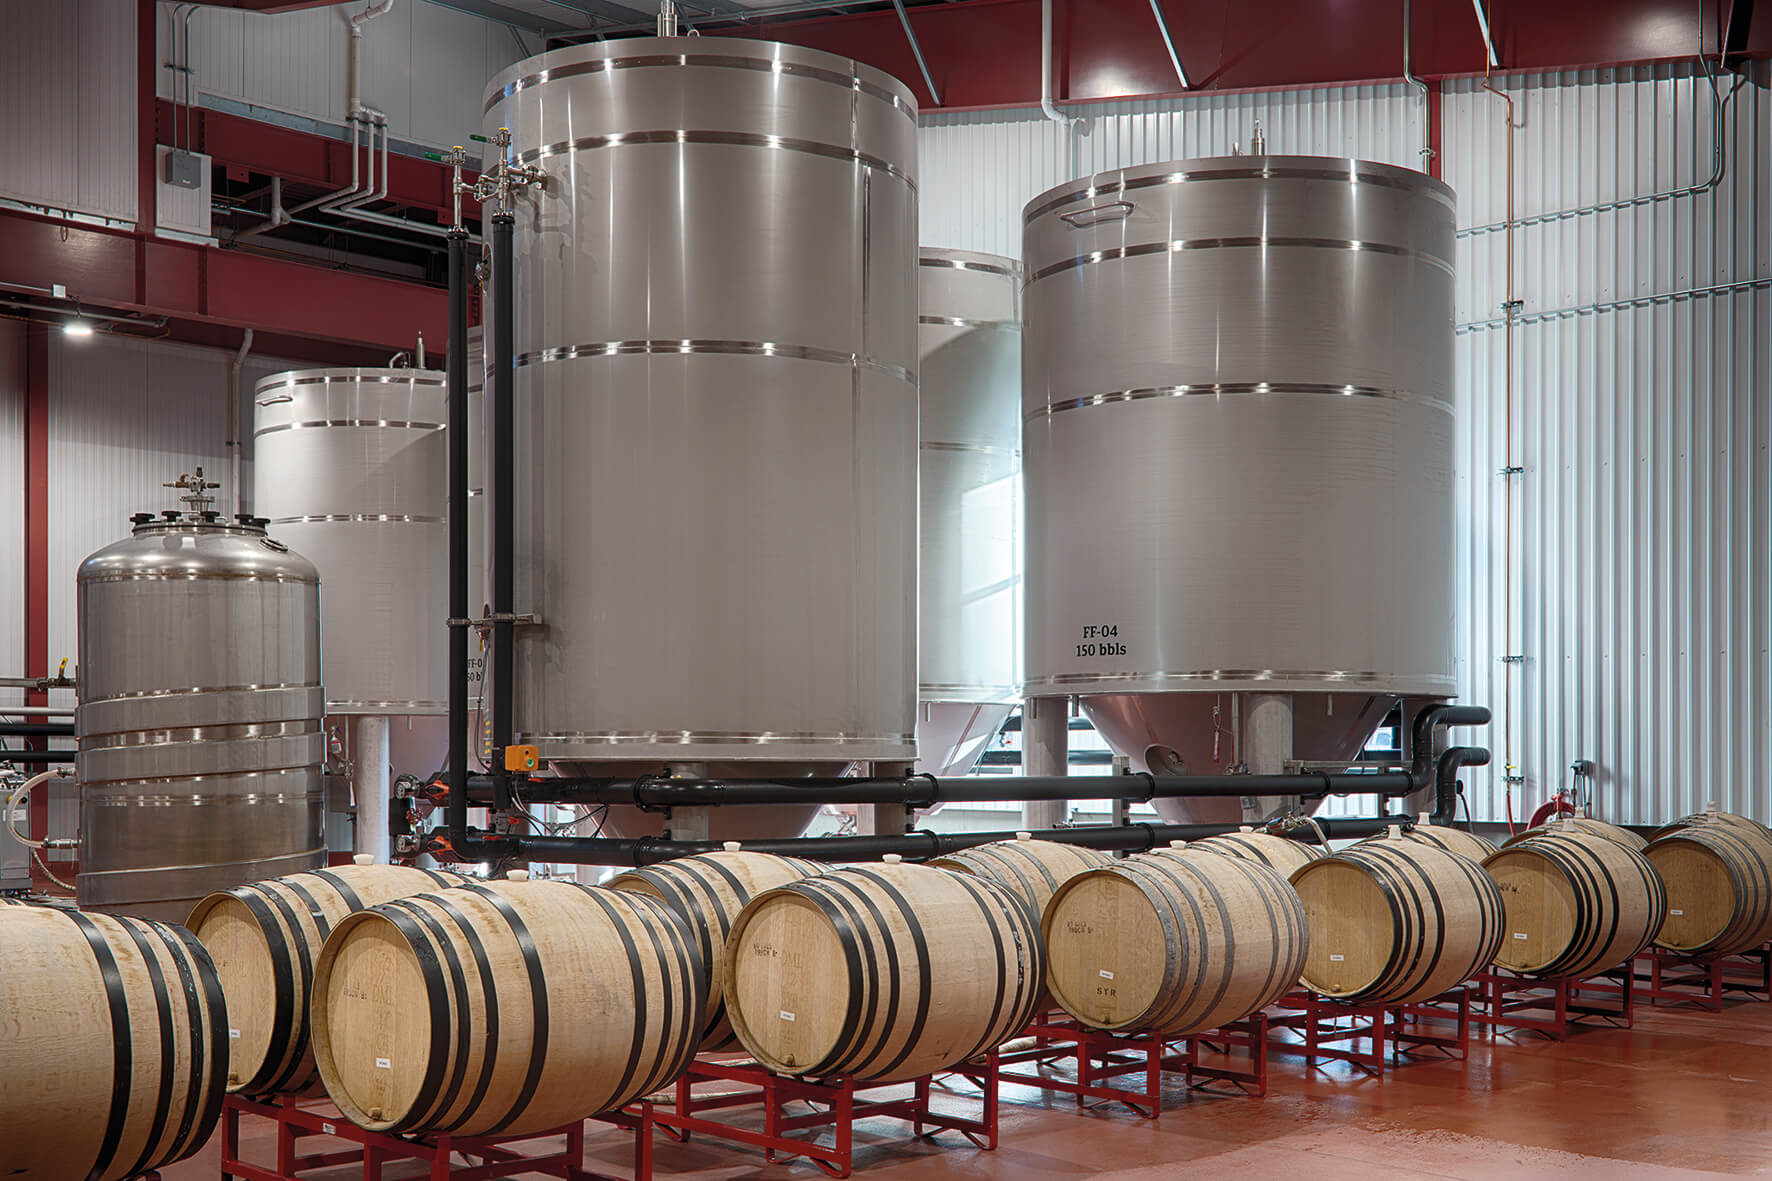 Die Russian River Brewing Company in den USA setzt mit ihrer Greenfield-Brauerei neue Maßstäbe.